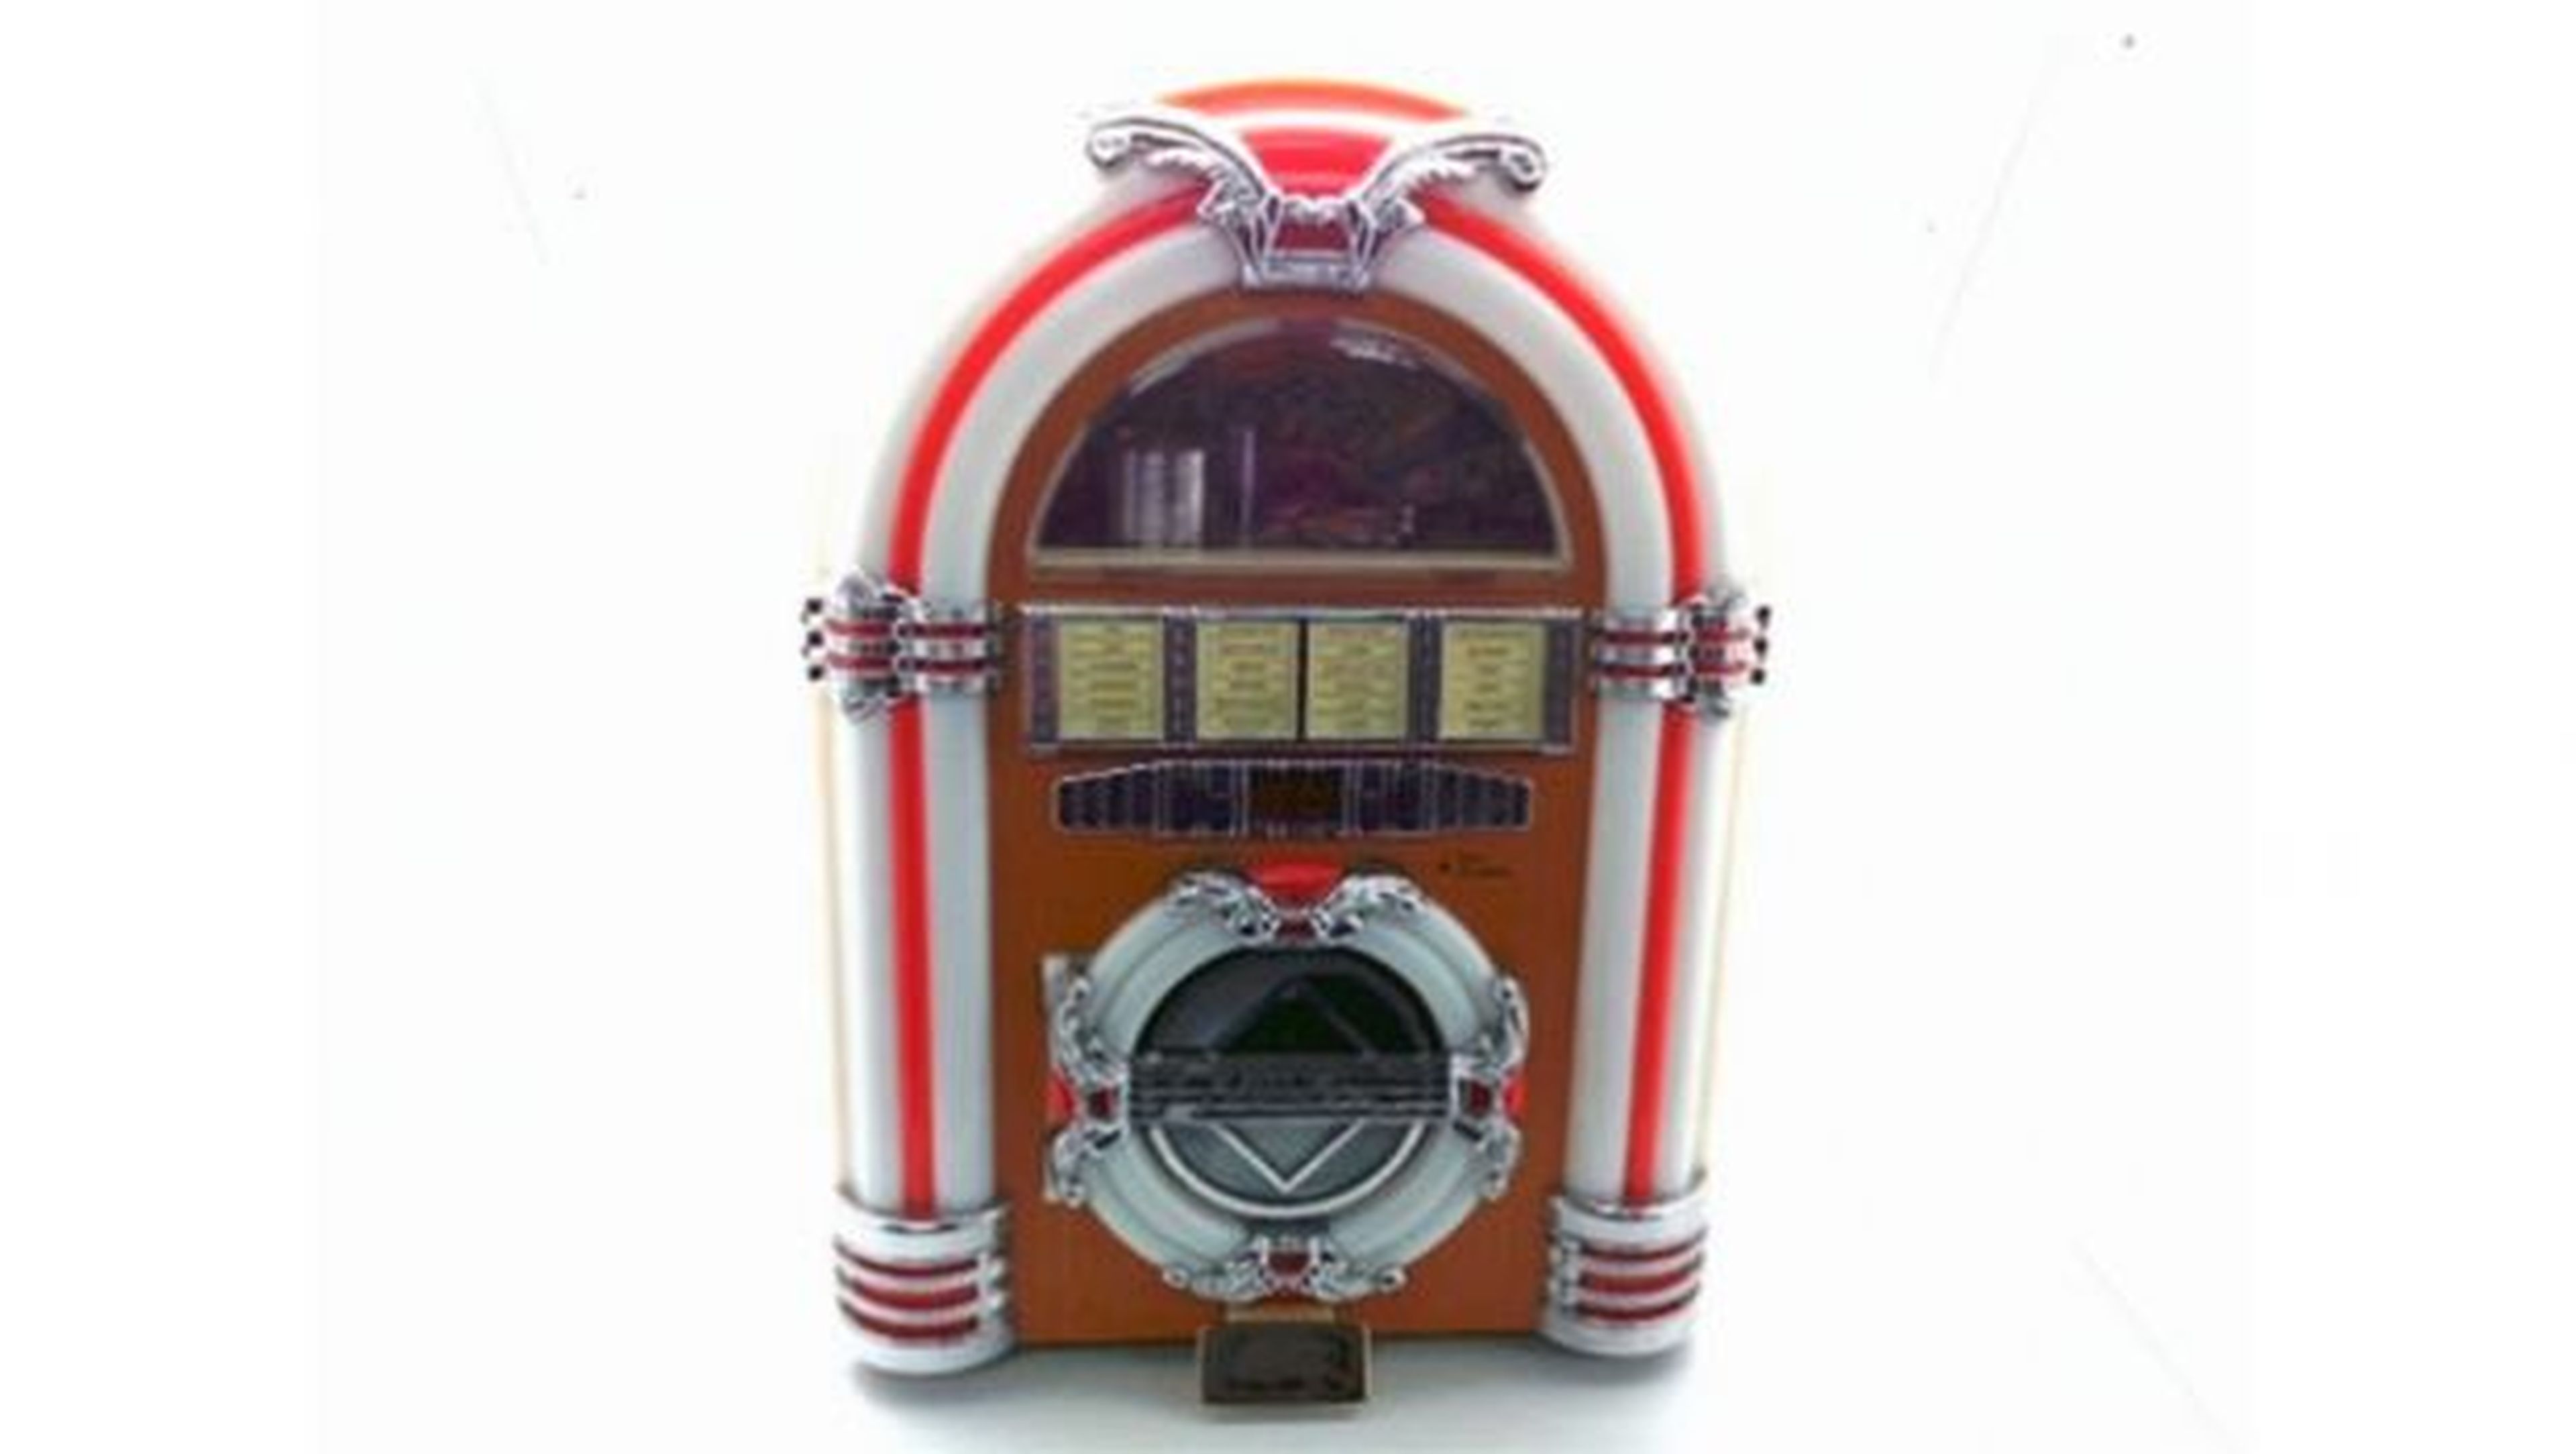 Este radio CD-Cassette de Coca-cola imita la apariencia de una jukebox de los años 50